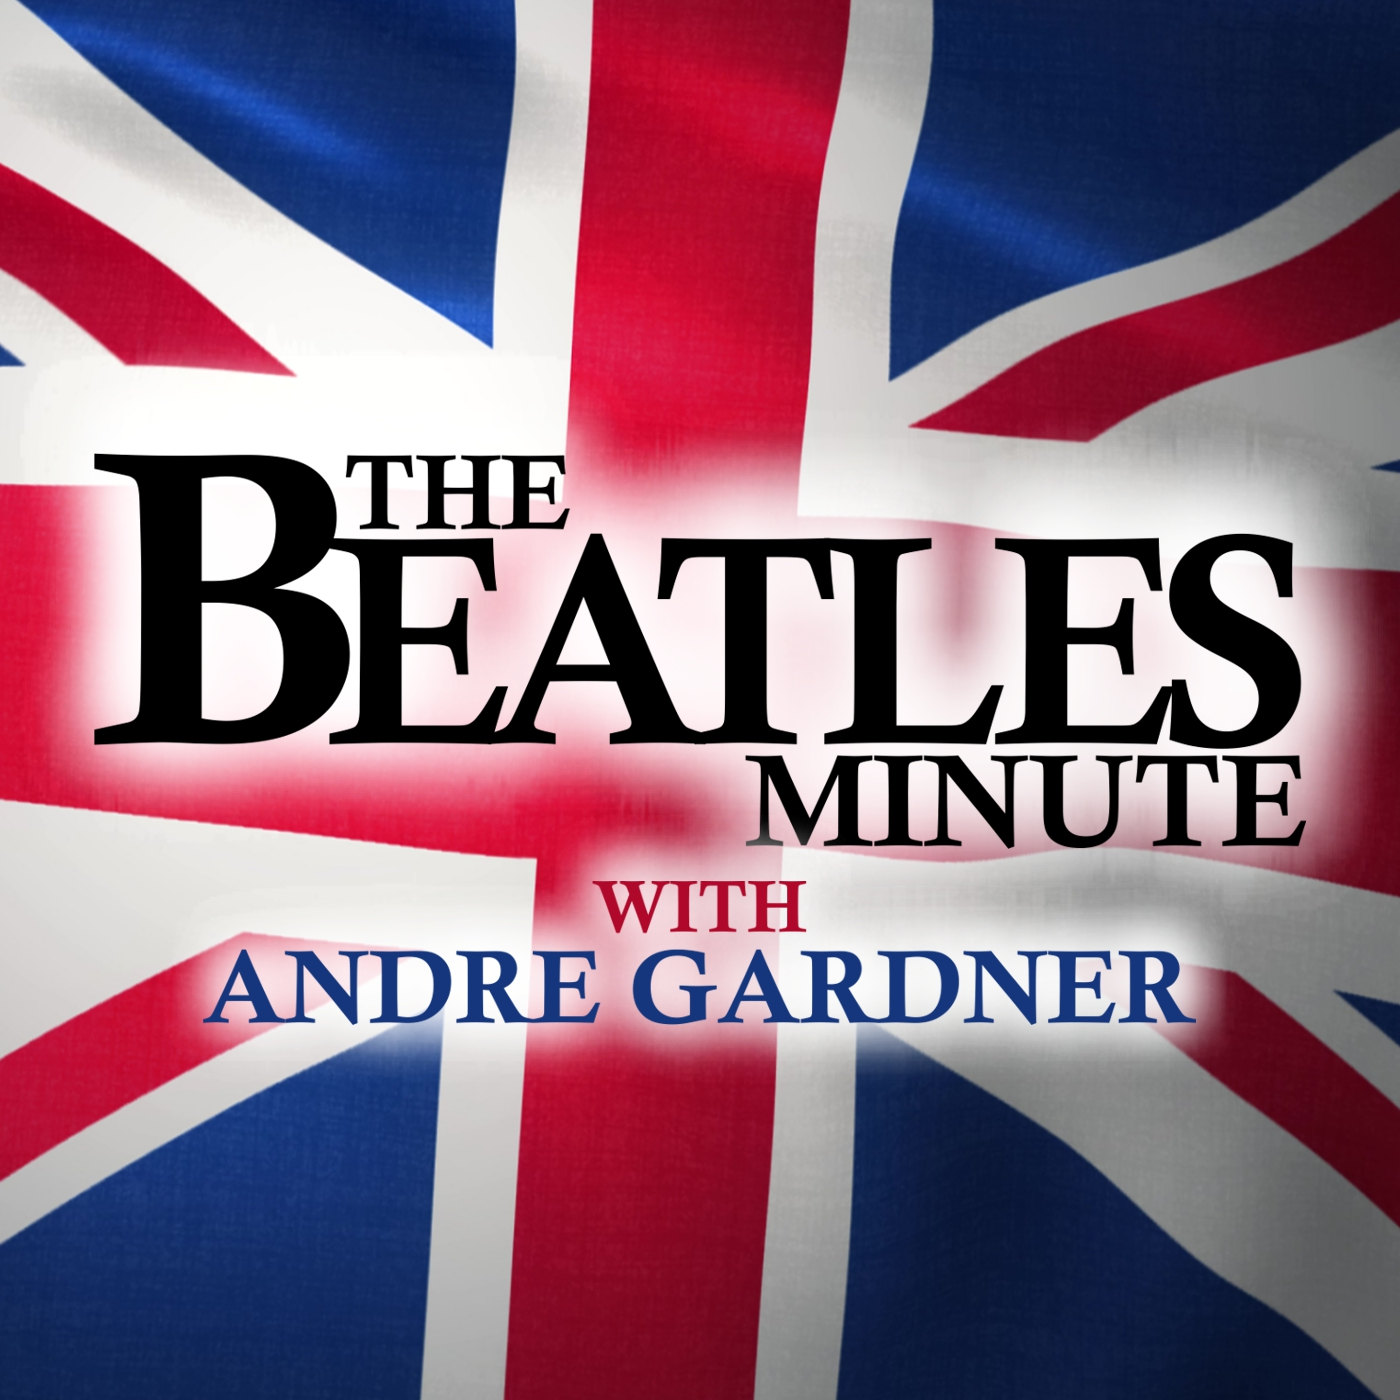 Beatles Minute - week of September 9, 2019